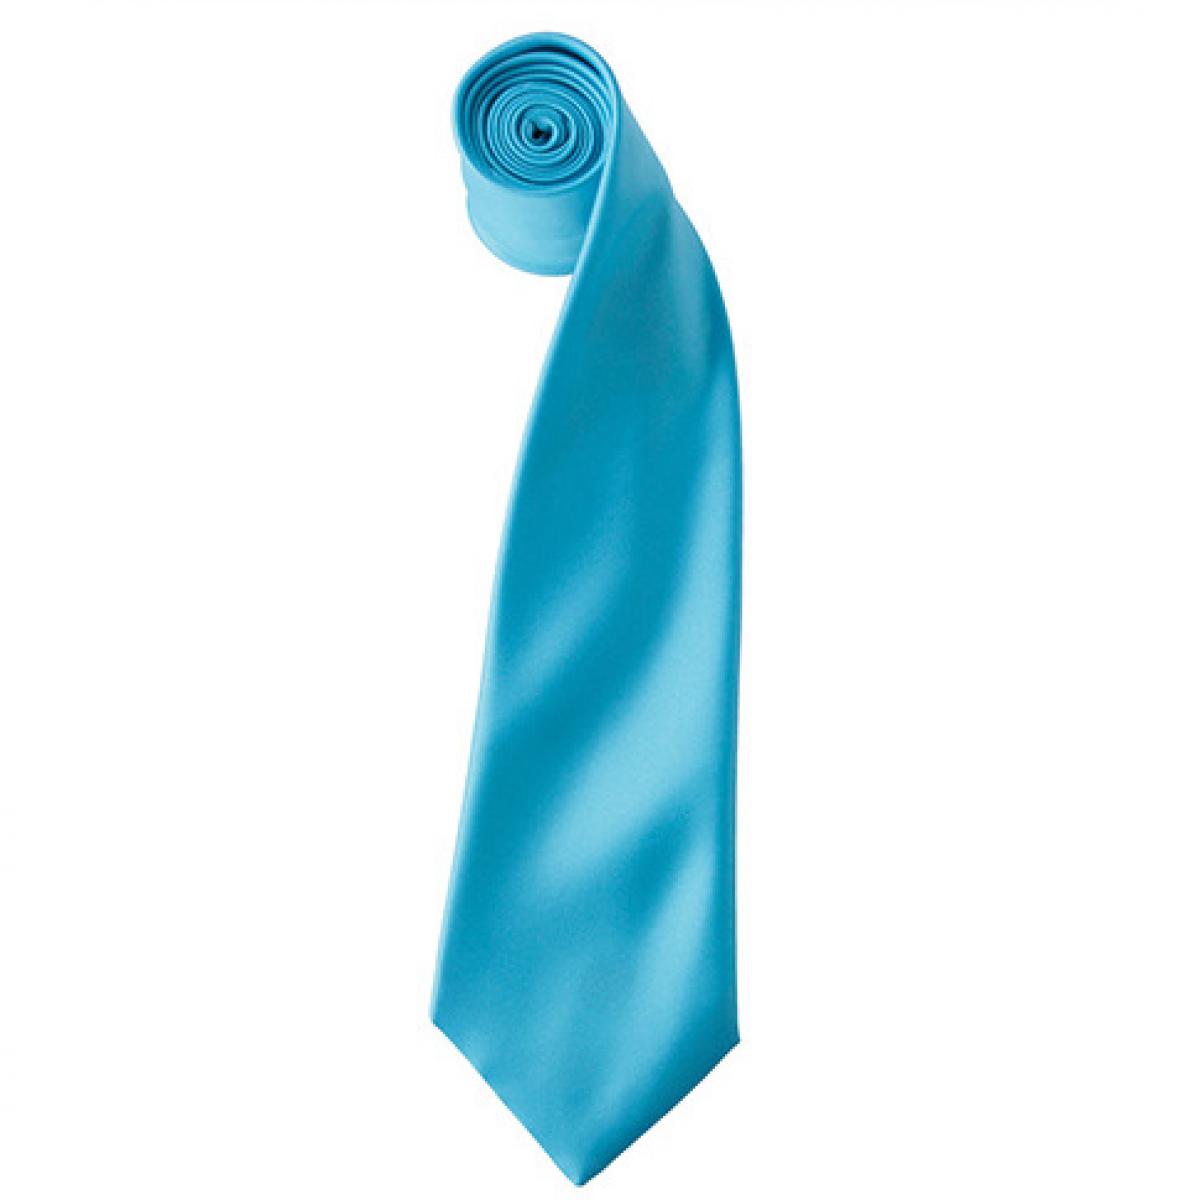 Hersteller: Premier Workwear Herstellernummer: PR750 Artikelbezeichnung: Satin Tie ´Colours´ / 144 x 8,5 cm Farbe: Turquoise (ca. Pantone 312)